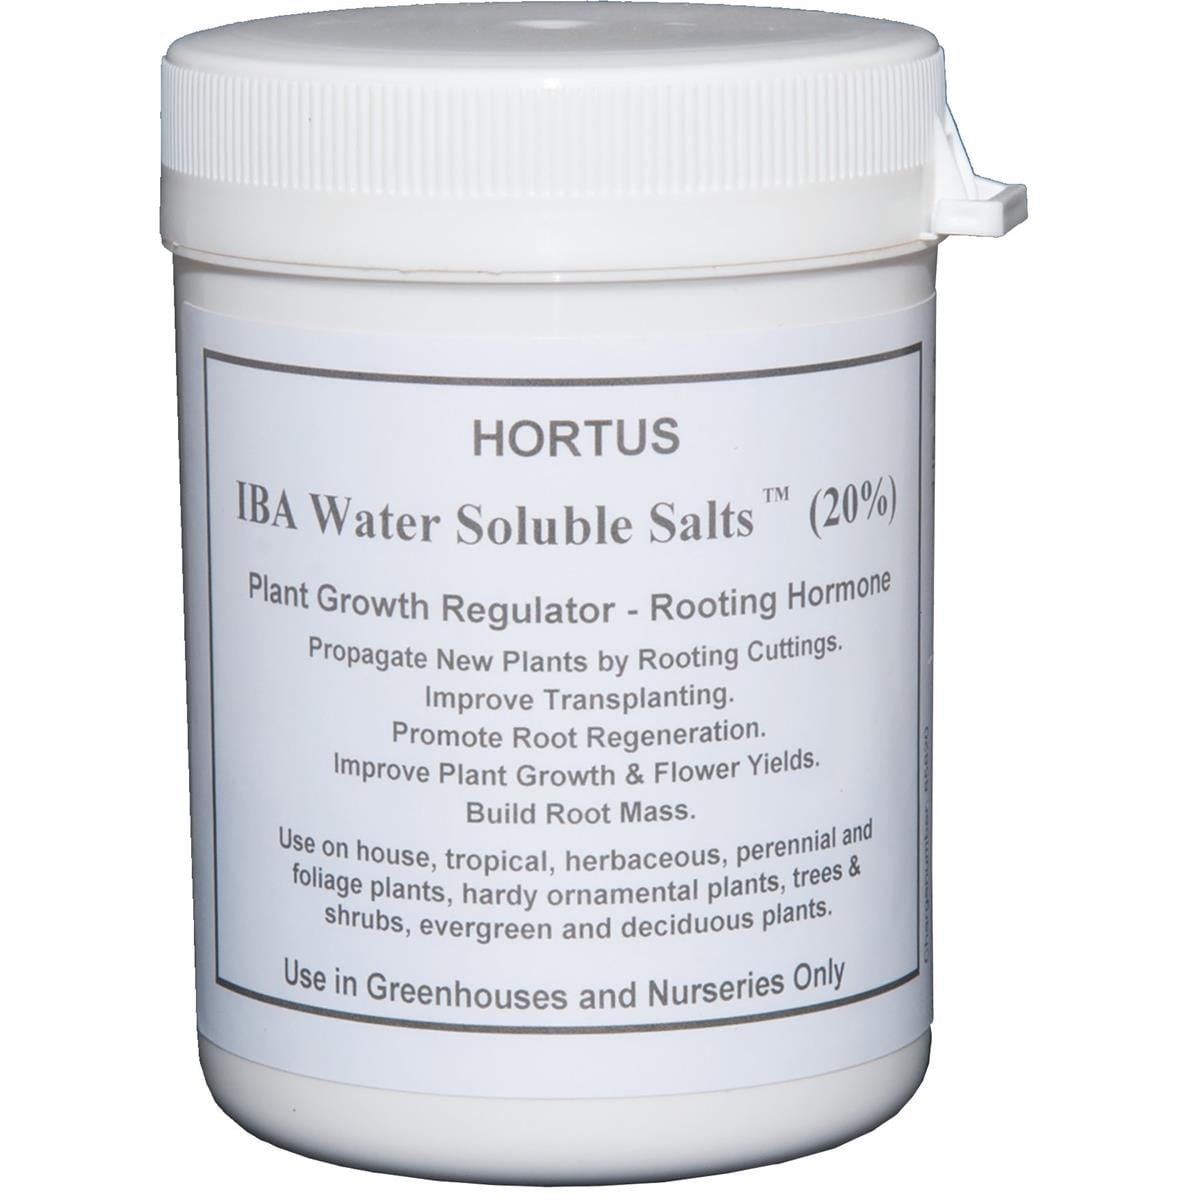 Hortus IBA Water Soluble Salts™ Rooting Hormone